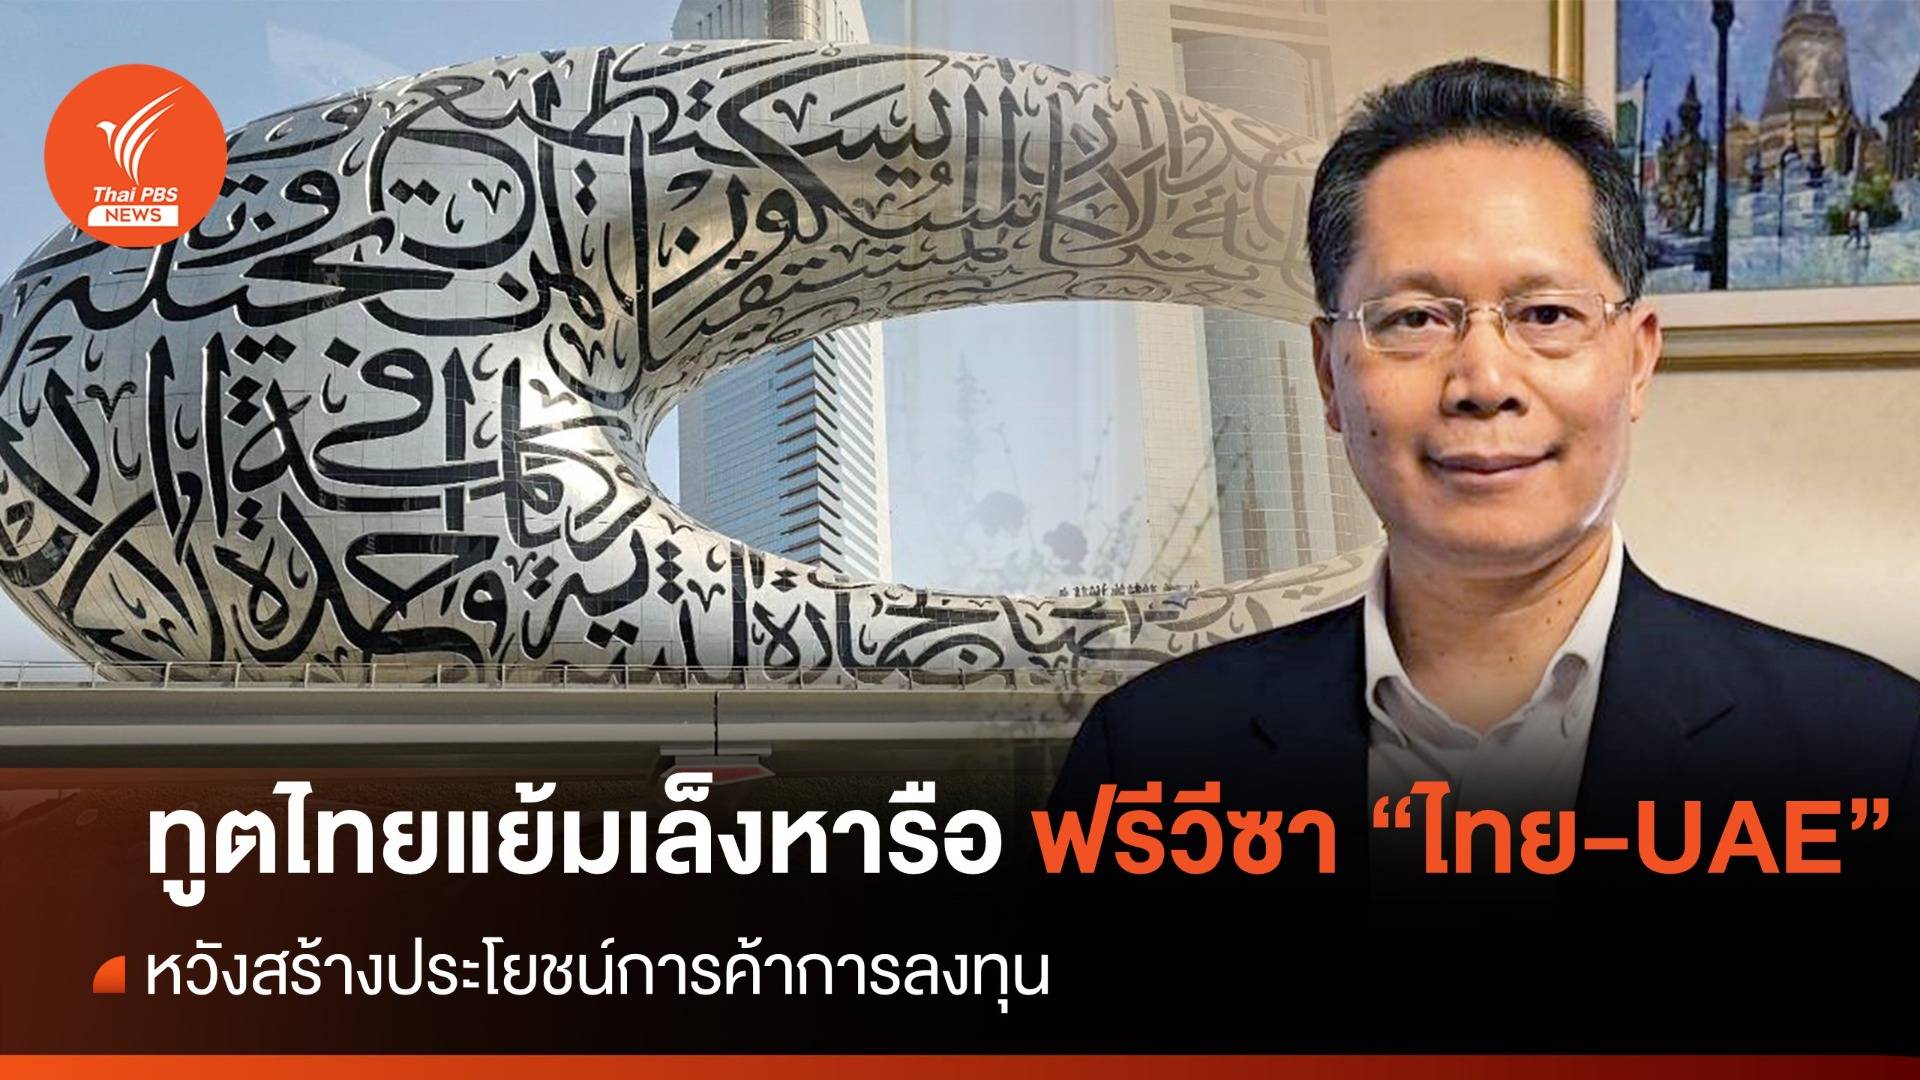 ทูตไทย ณ กรุงอาบูดาบี แย้มเล็งหารือฟรีวีซา "ไทย-ยูเออี" ผลักดันการค้าการลงทุน